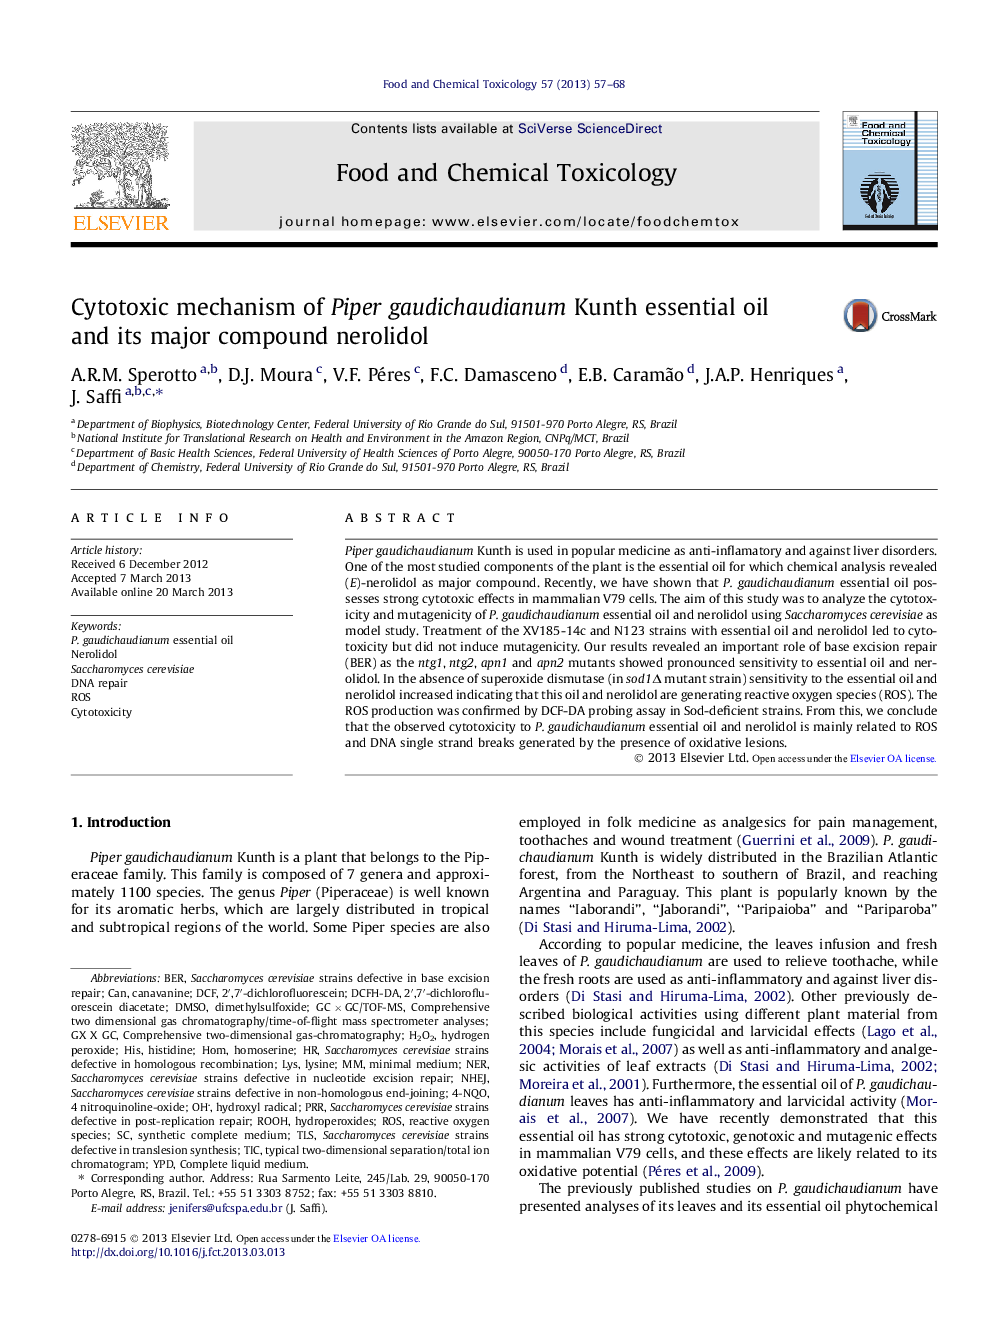 مکانیسم سیتوتوکسیک روغن اسانس کیک پپور گودوخودینوم و ترکیب اصلی آن نئیدیلول 